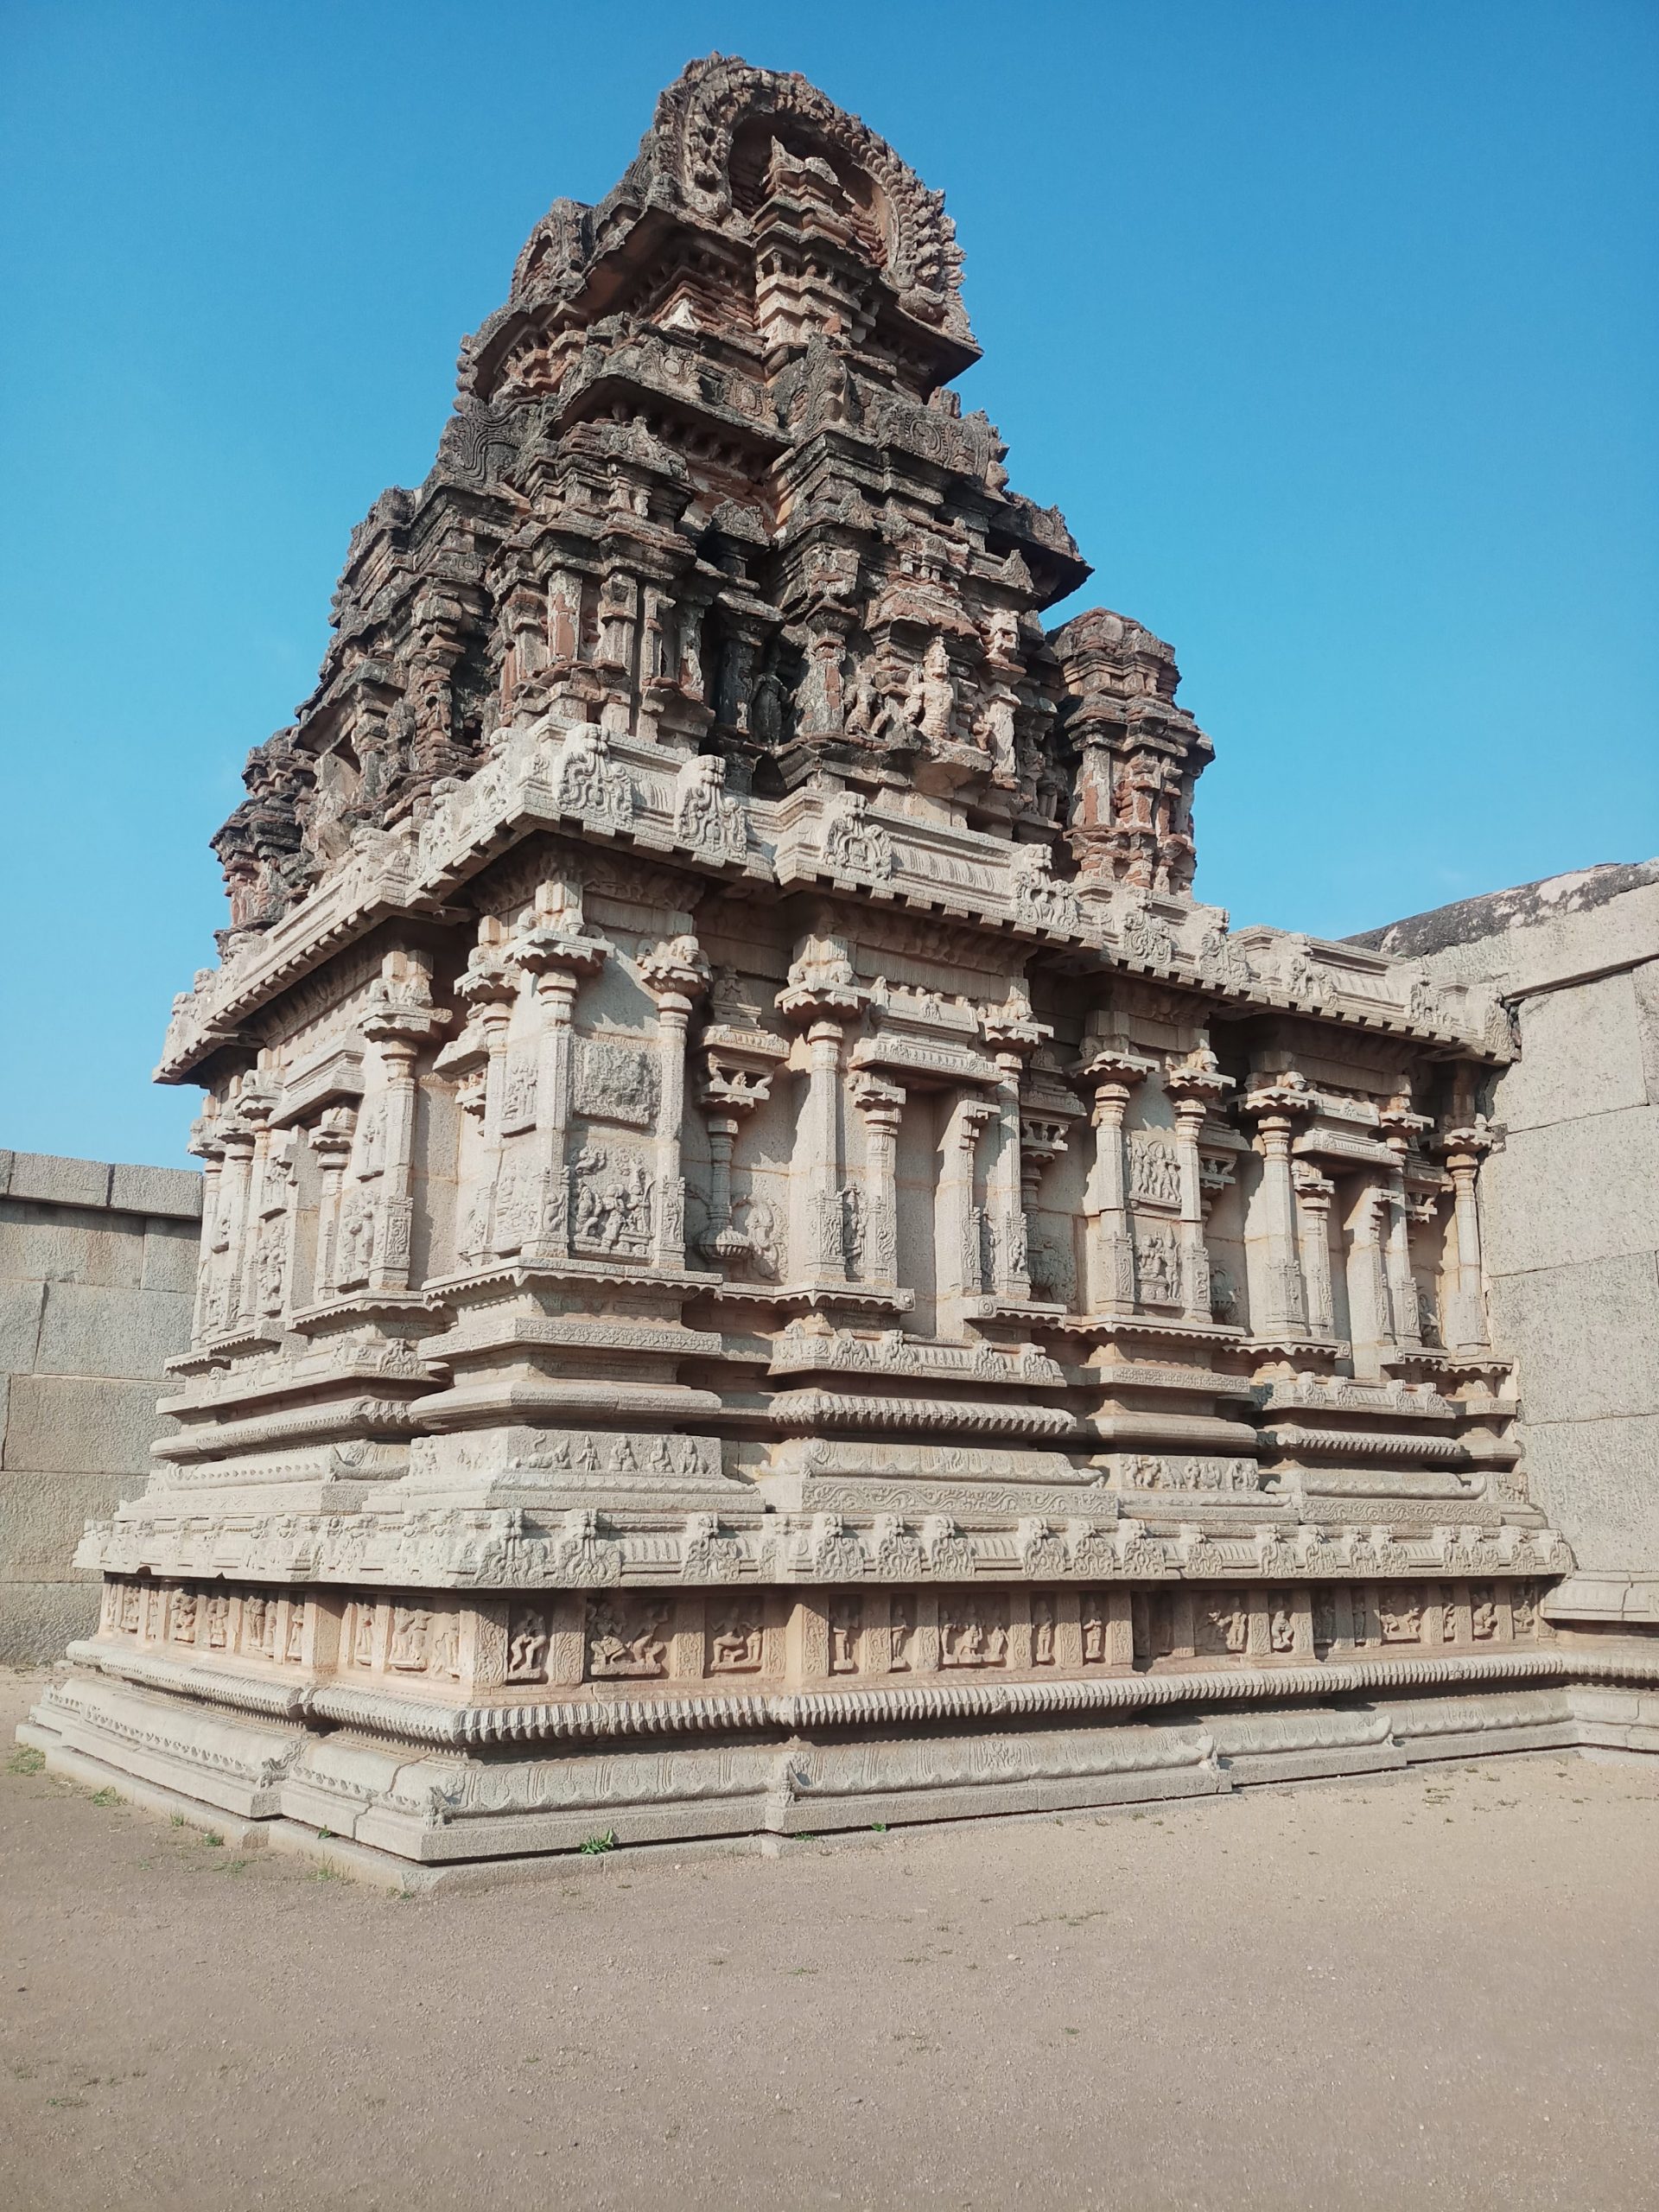 Hampi Temple